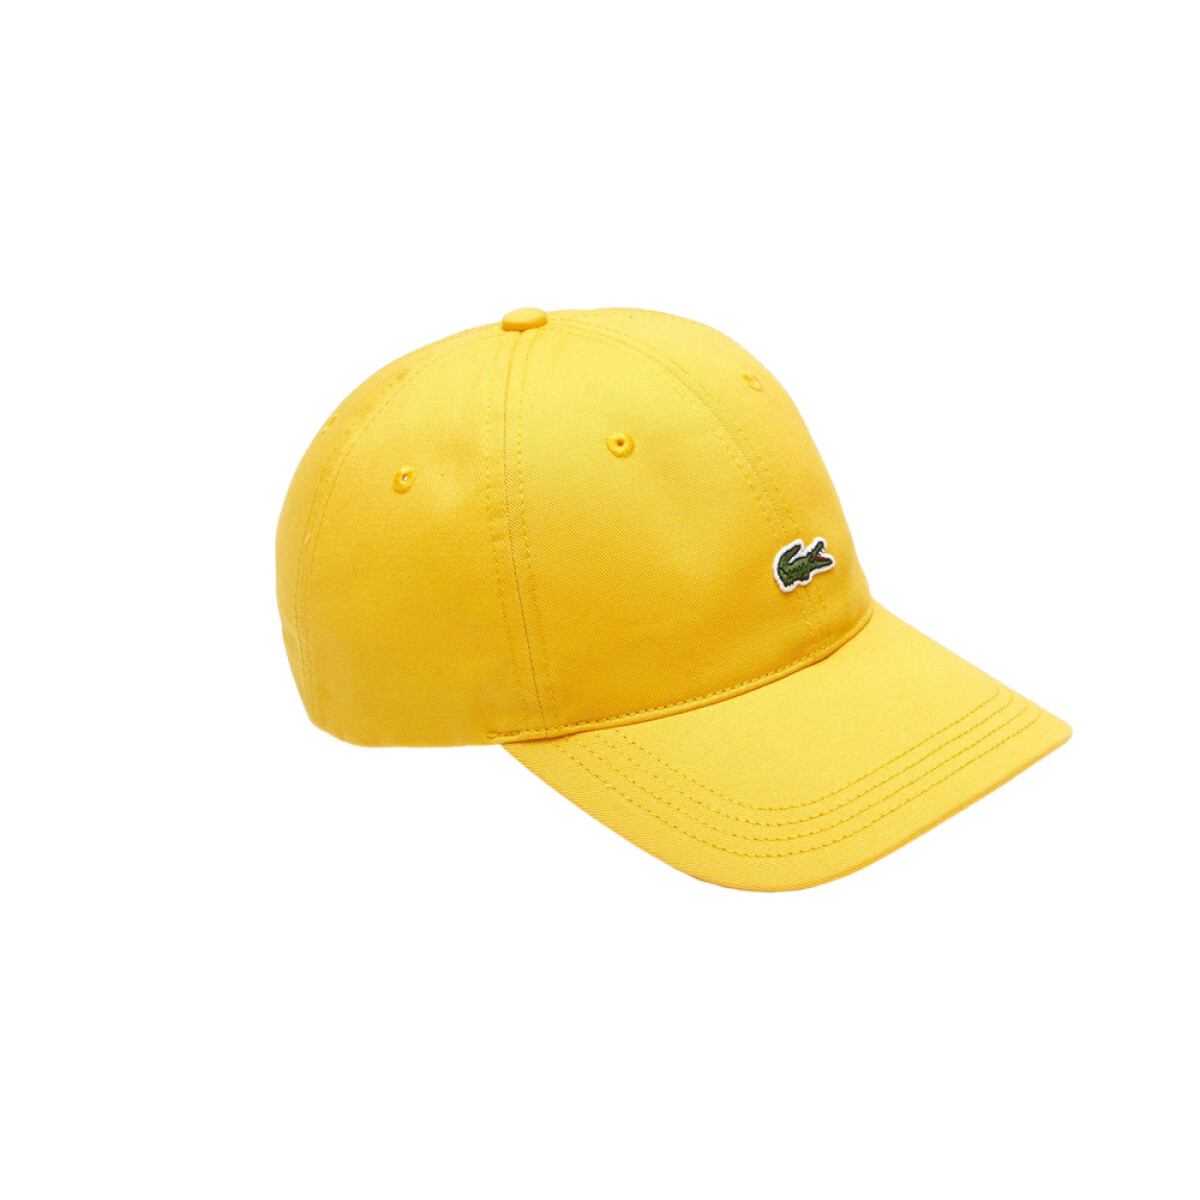 GORRO LACOSTE CAPS & HATS - Yellow 